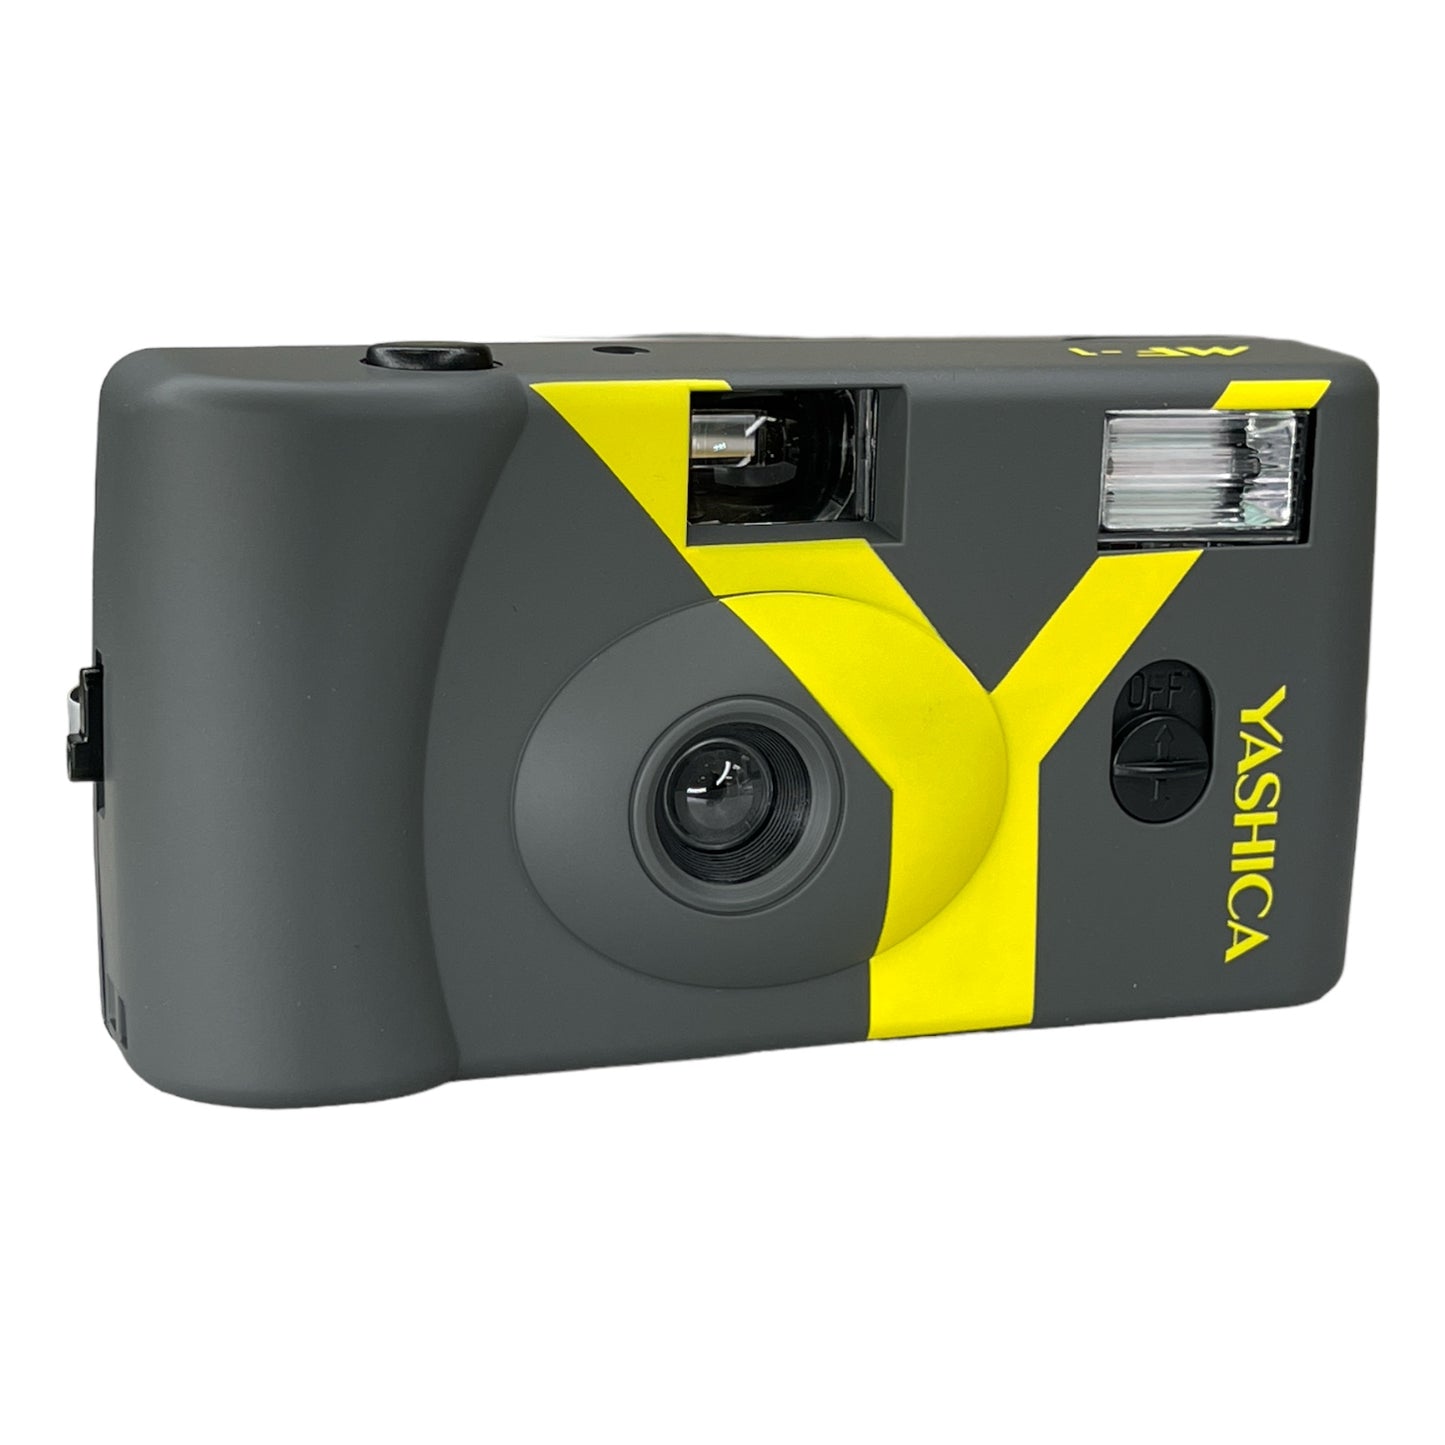 Yashica MF-1 Yellow Gray Snapshot Art Camera